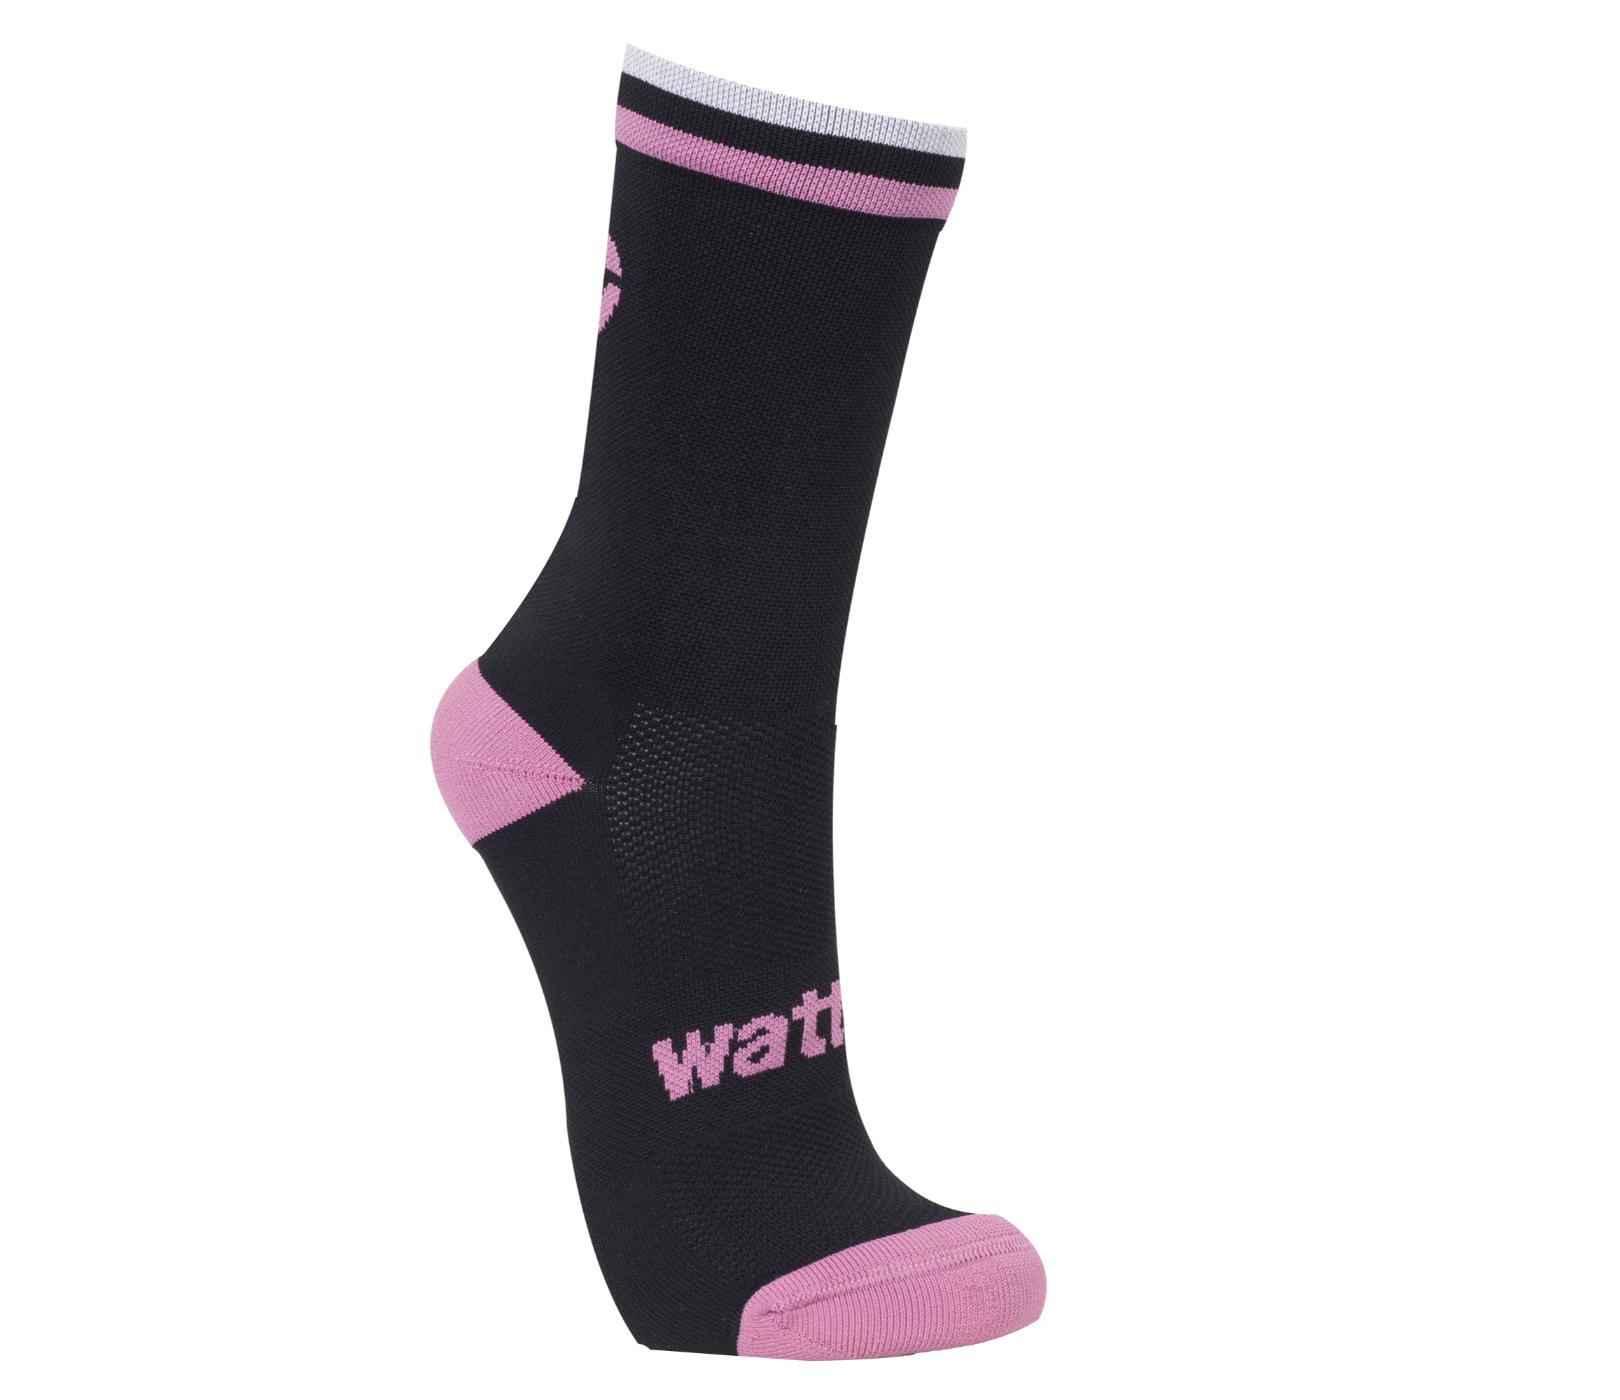 Wattz Knit Black/Pink Ladies Socks